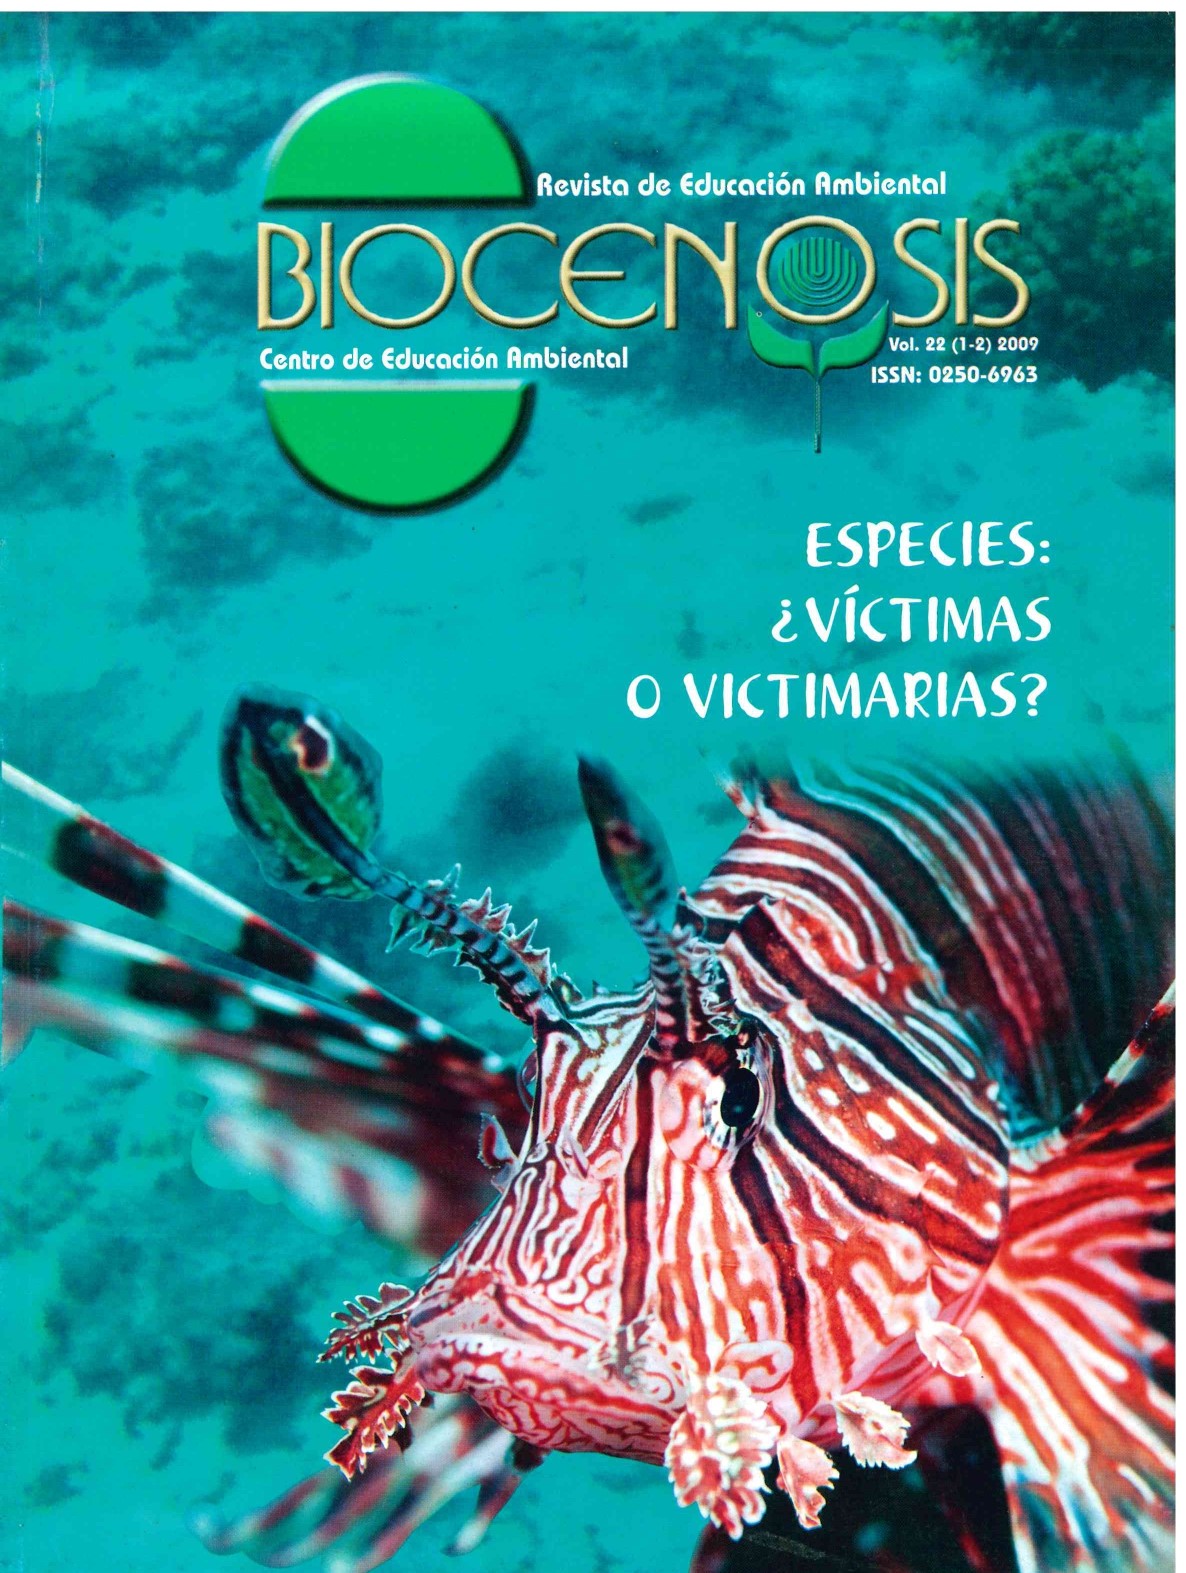 					Ver Vol. 22 Núm. 1-2 (2009): Biocenosis. Revista ambiental. Centro de Educación Ambiental- UNED
				